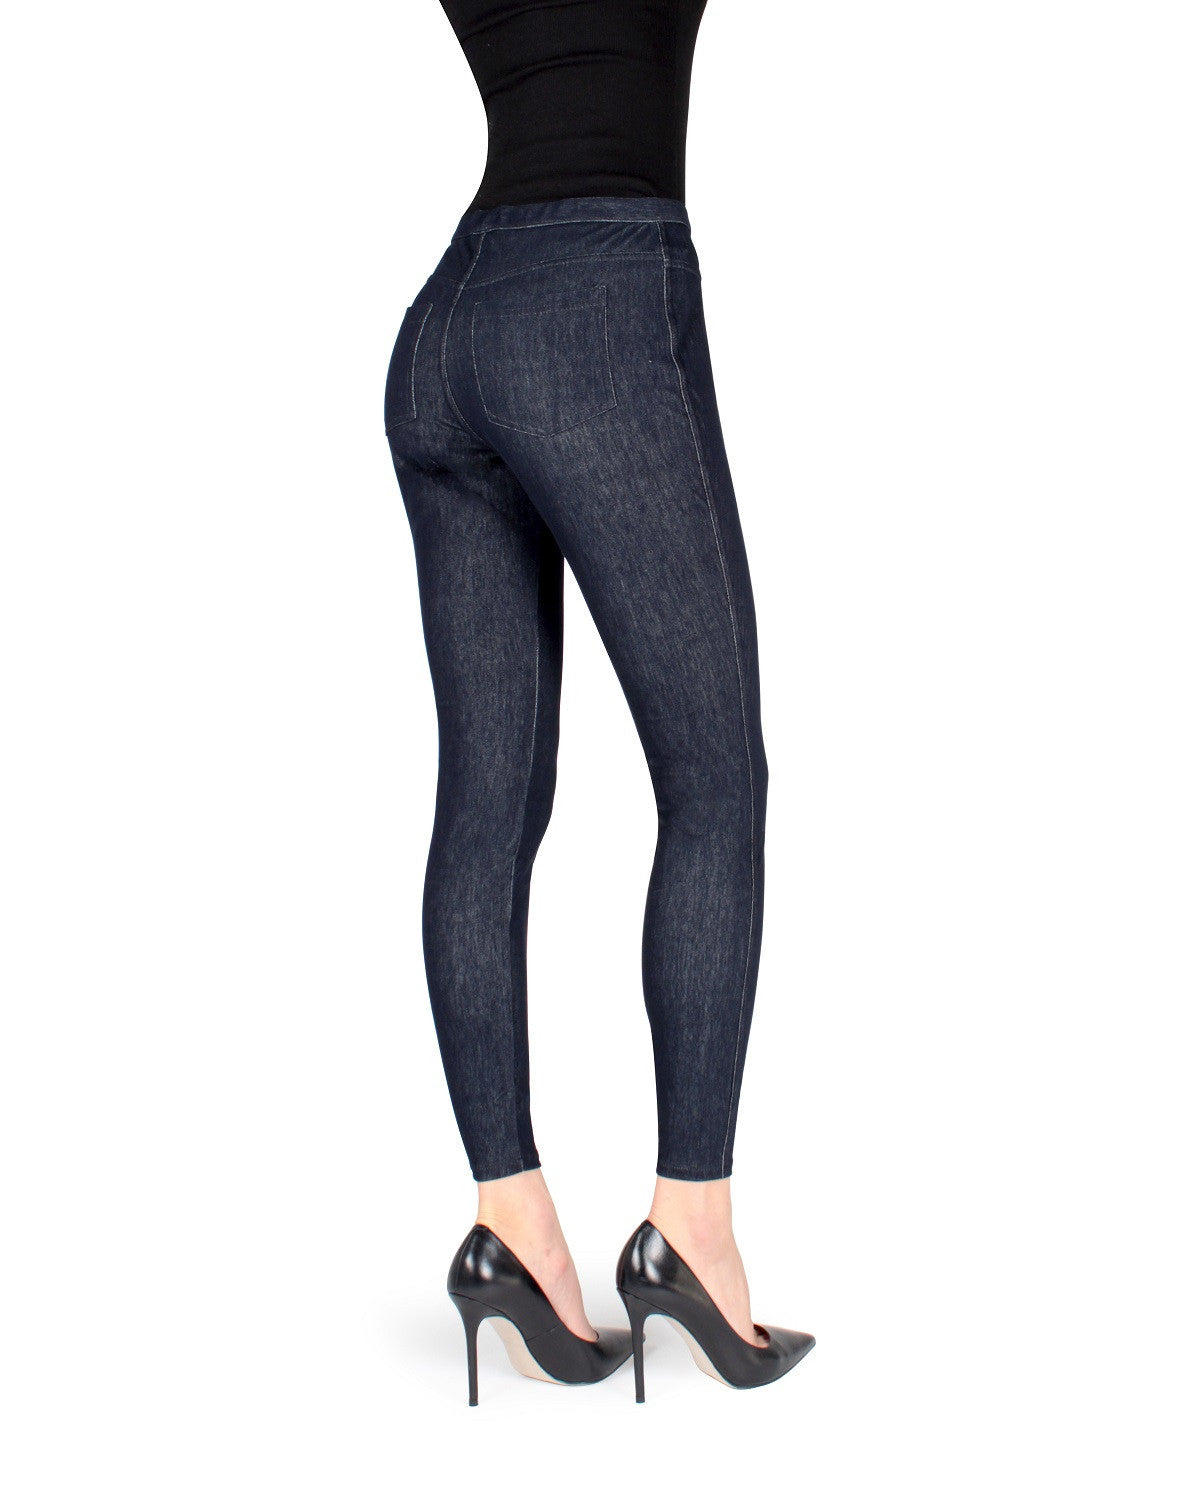 Calzedonia THERMAL SKINNY JEGGINGS - Jeggings - grigio jeans/grey -  Zalando.de